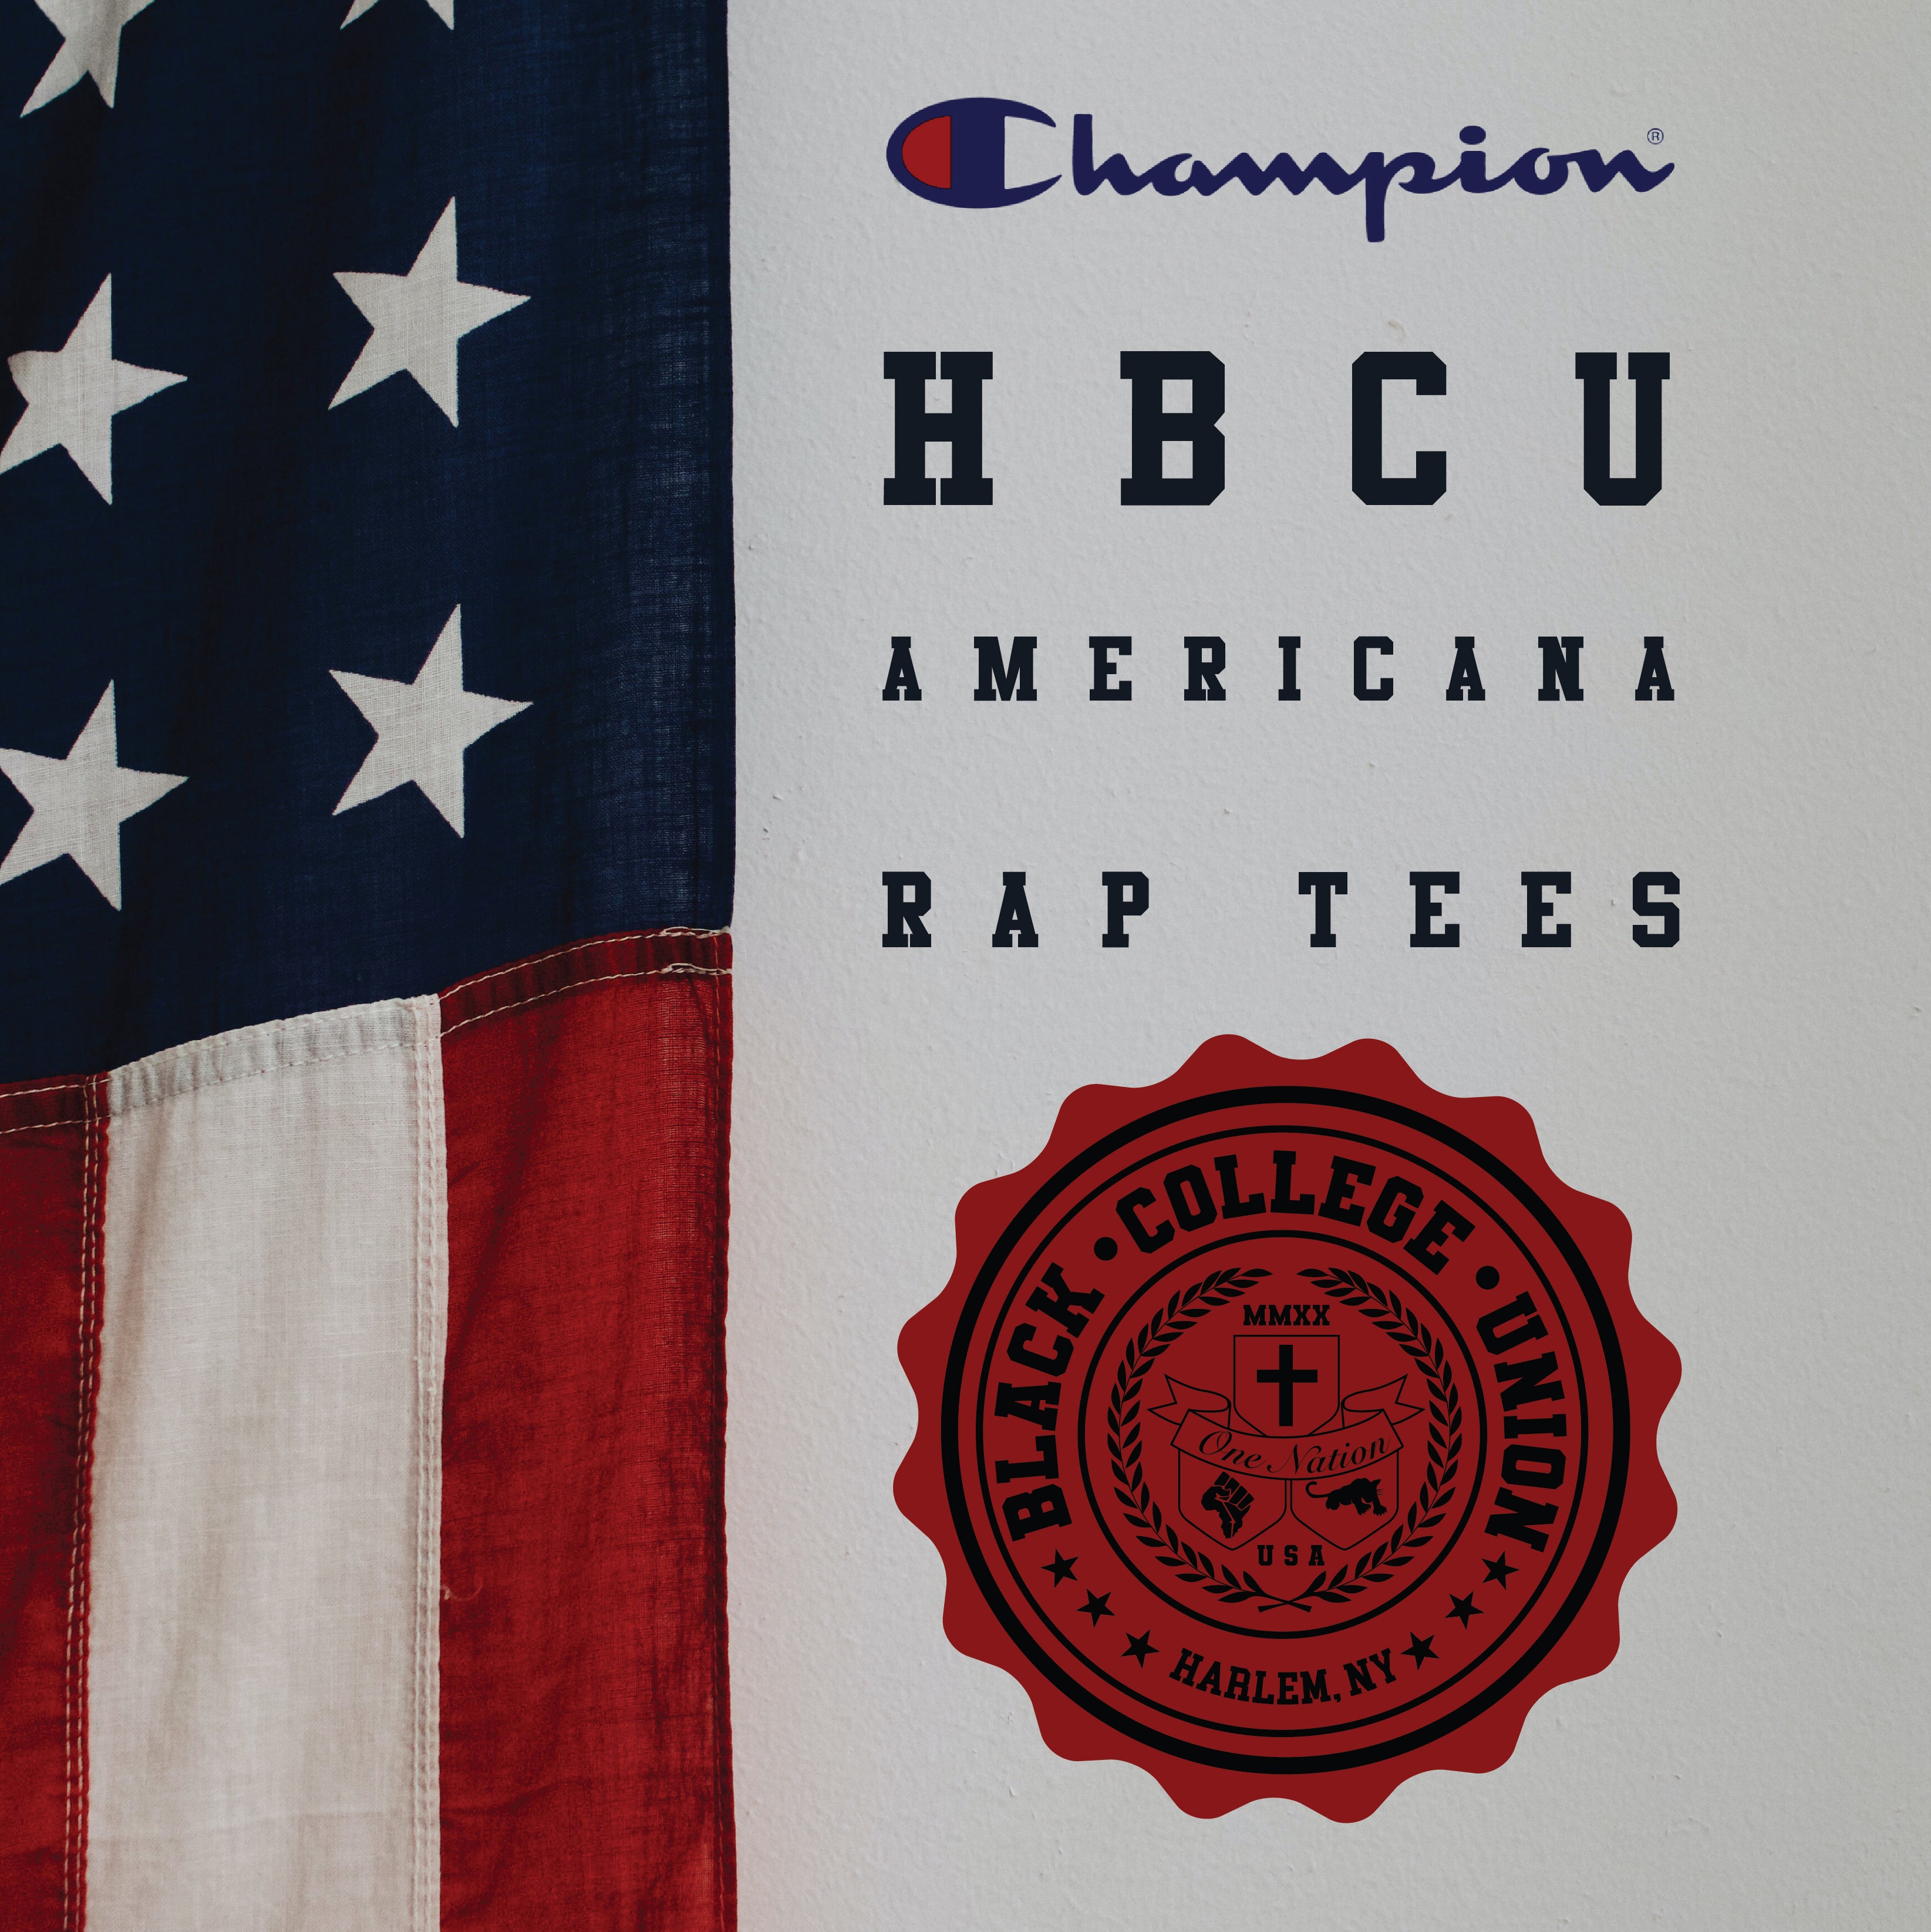 BCU X Champion Original HBCU Americana Rap Tee - Wilberforce [WU]